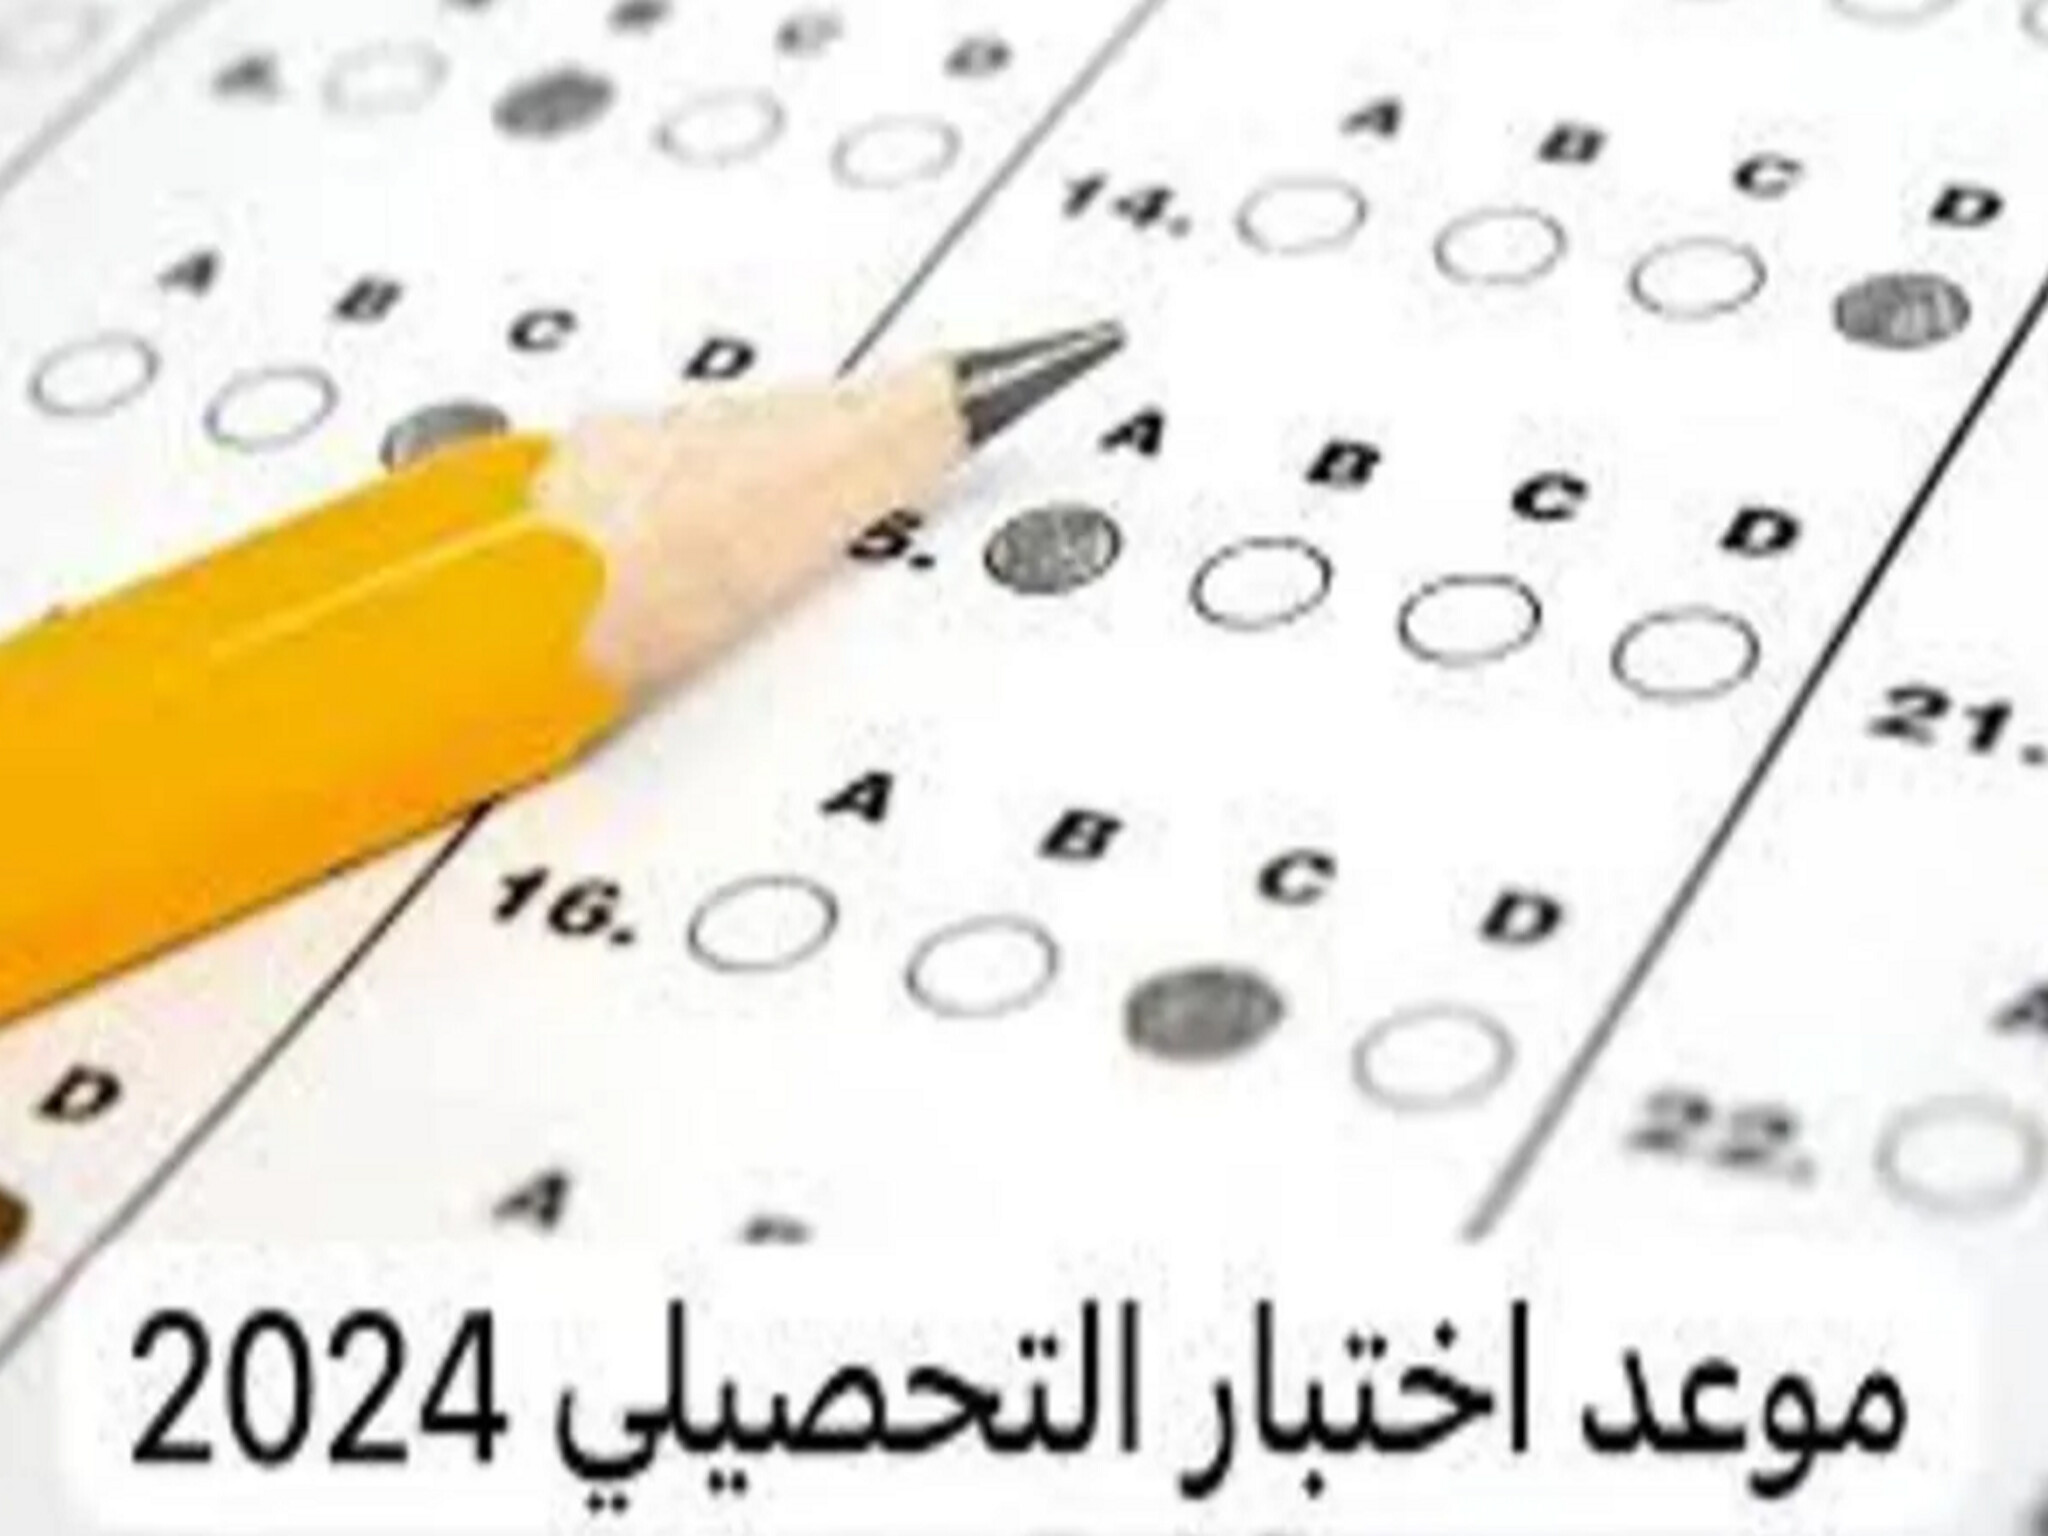 بدء الإختبار الورقي للتحصيل الدراسي 1445هـ في المملكة السعودية لطلاب الثانوية 